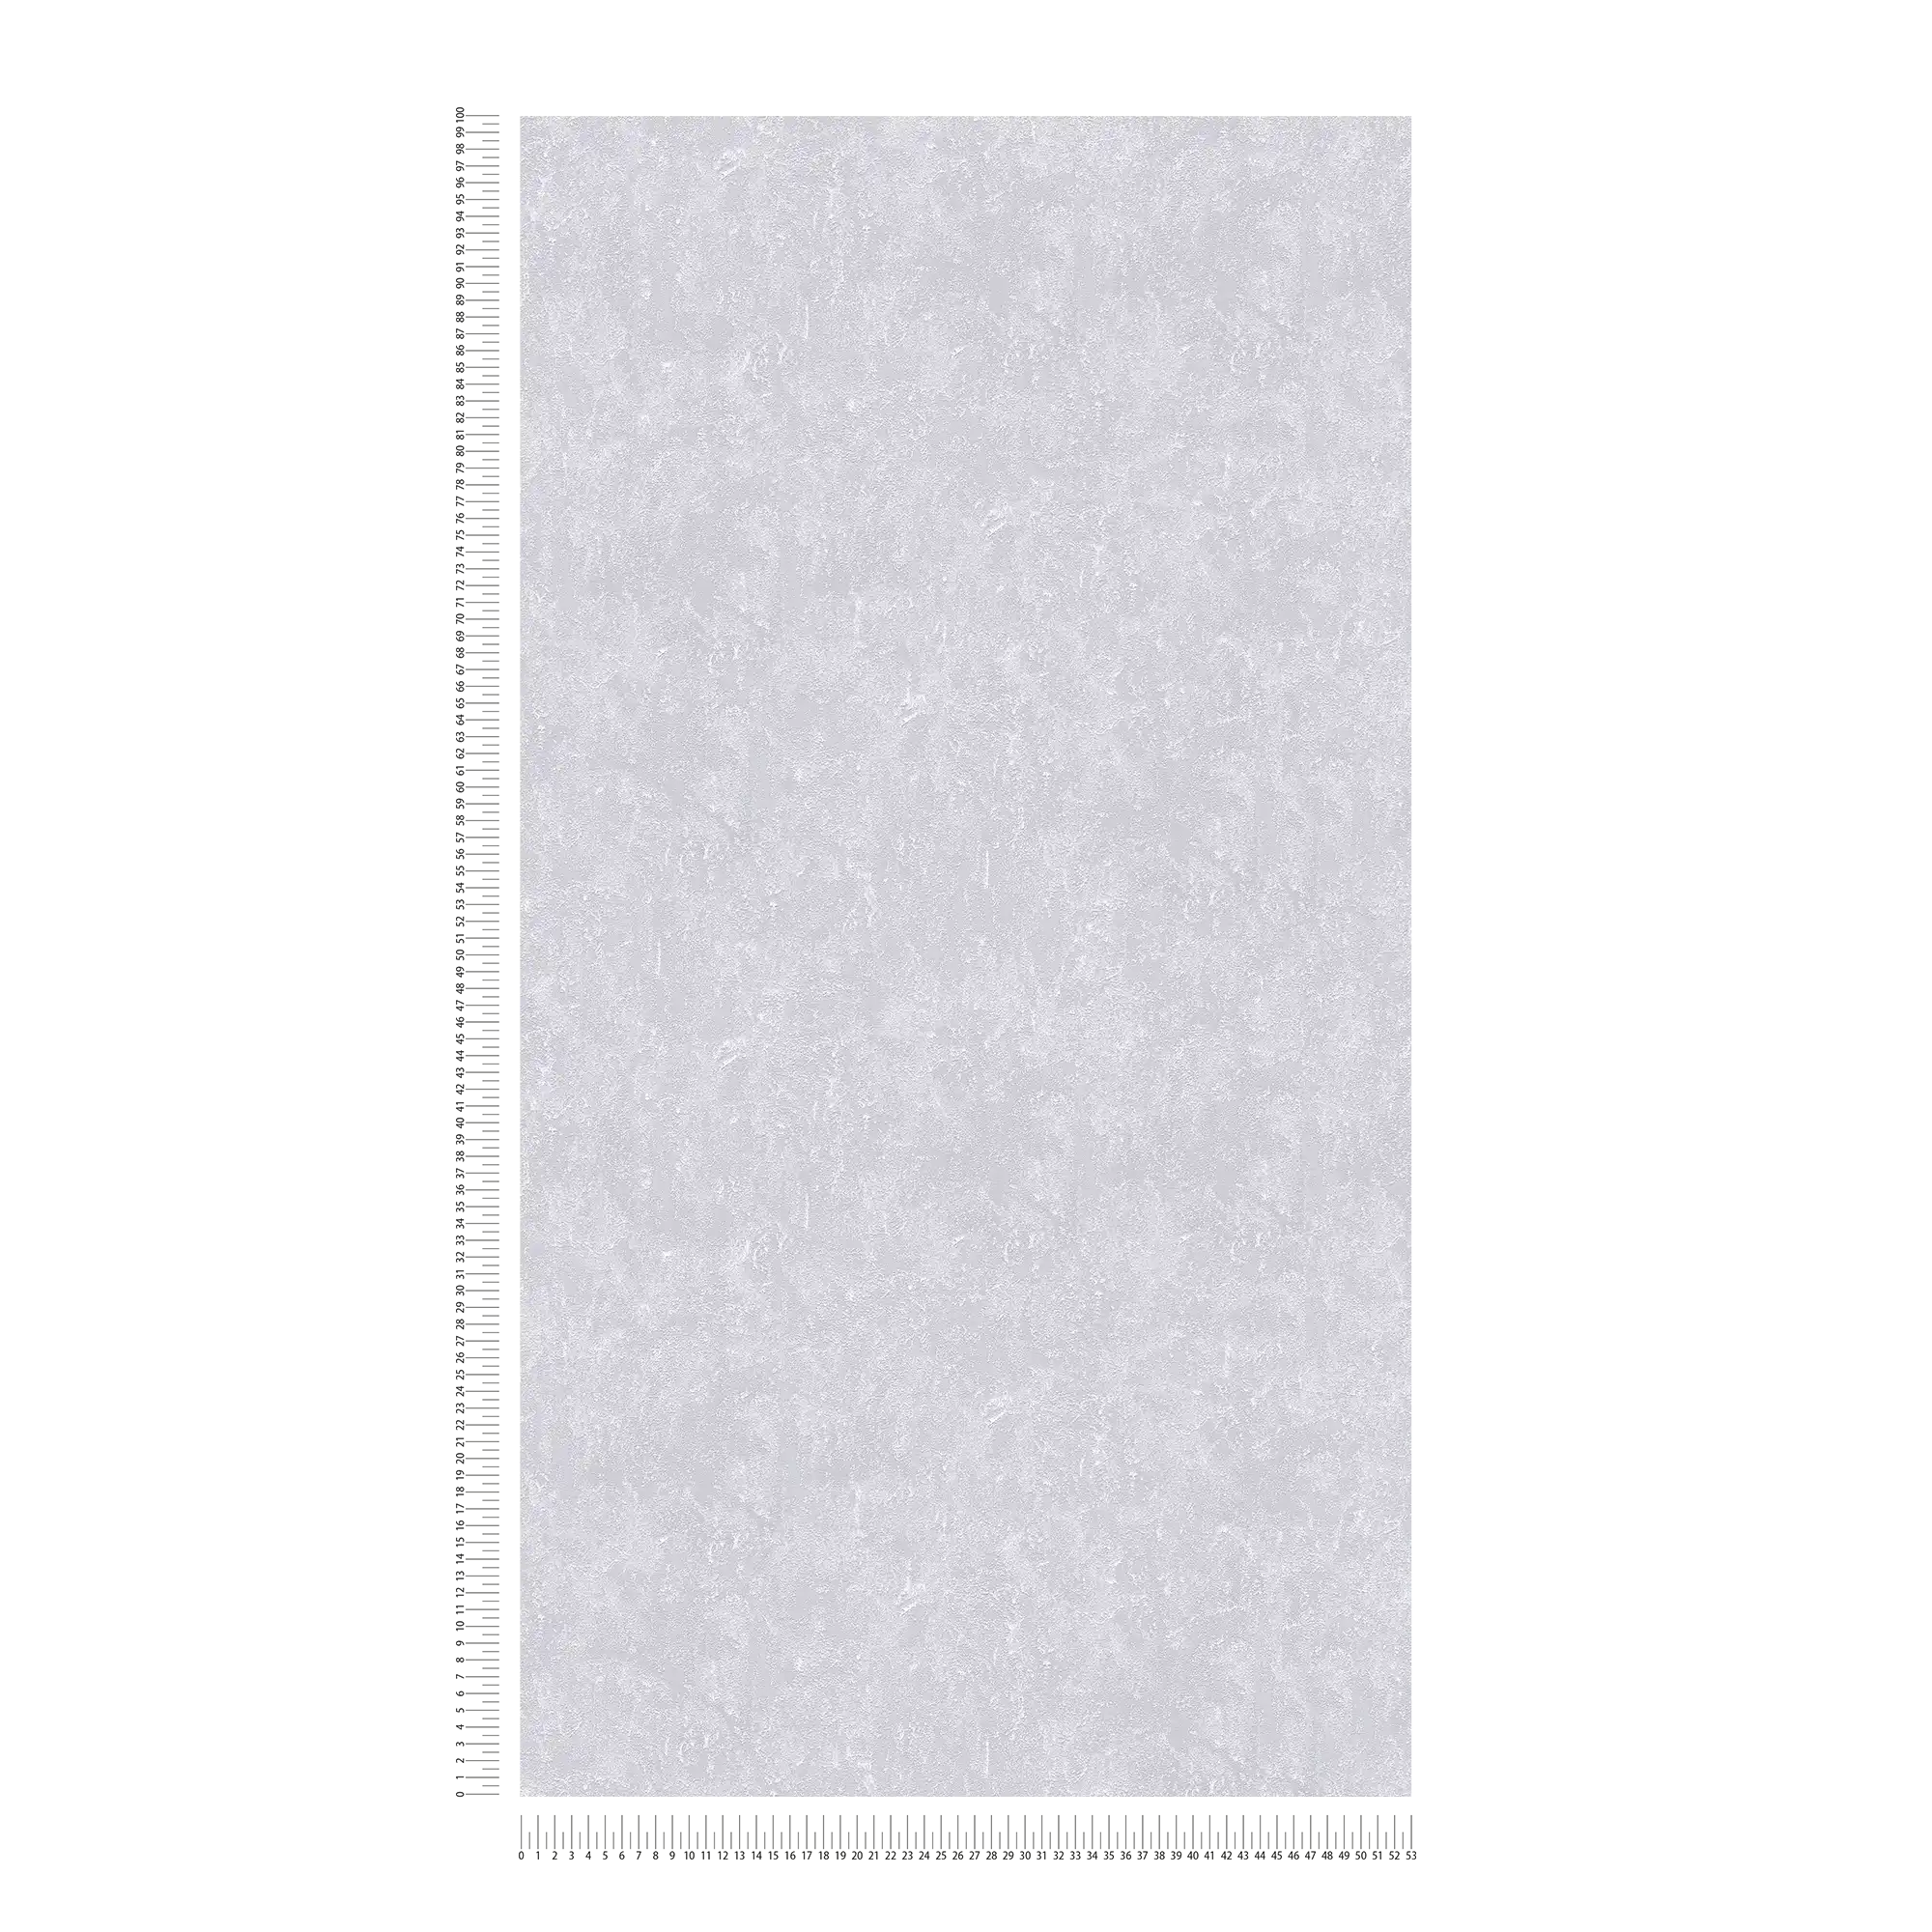             Metallic Tapete Grau glänzend mit Strukturprägung
        